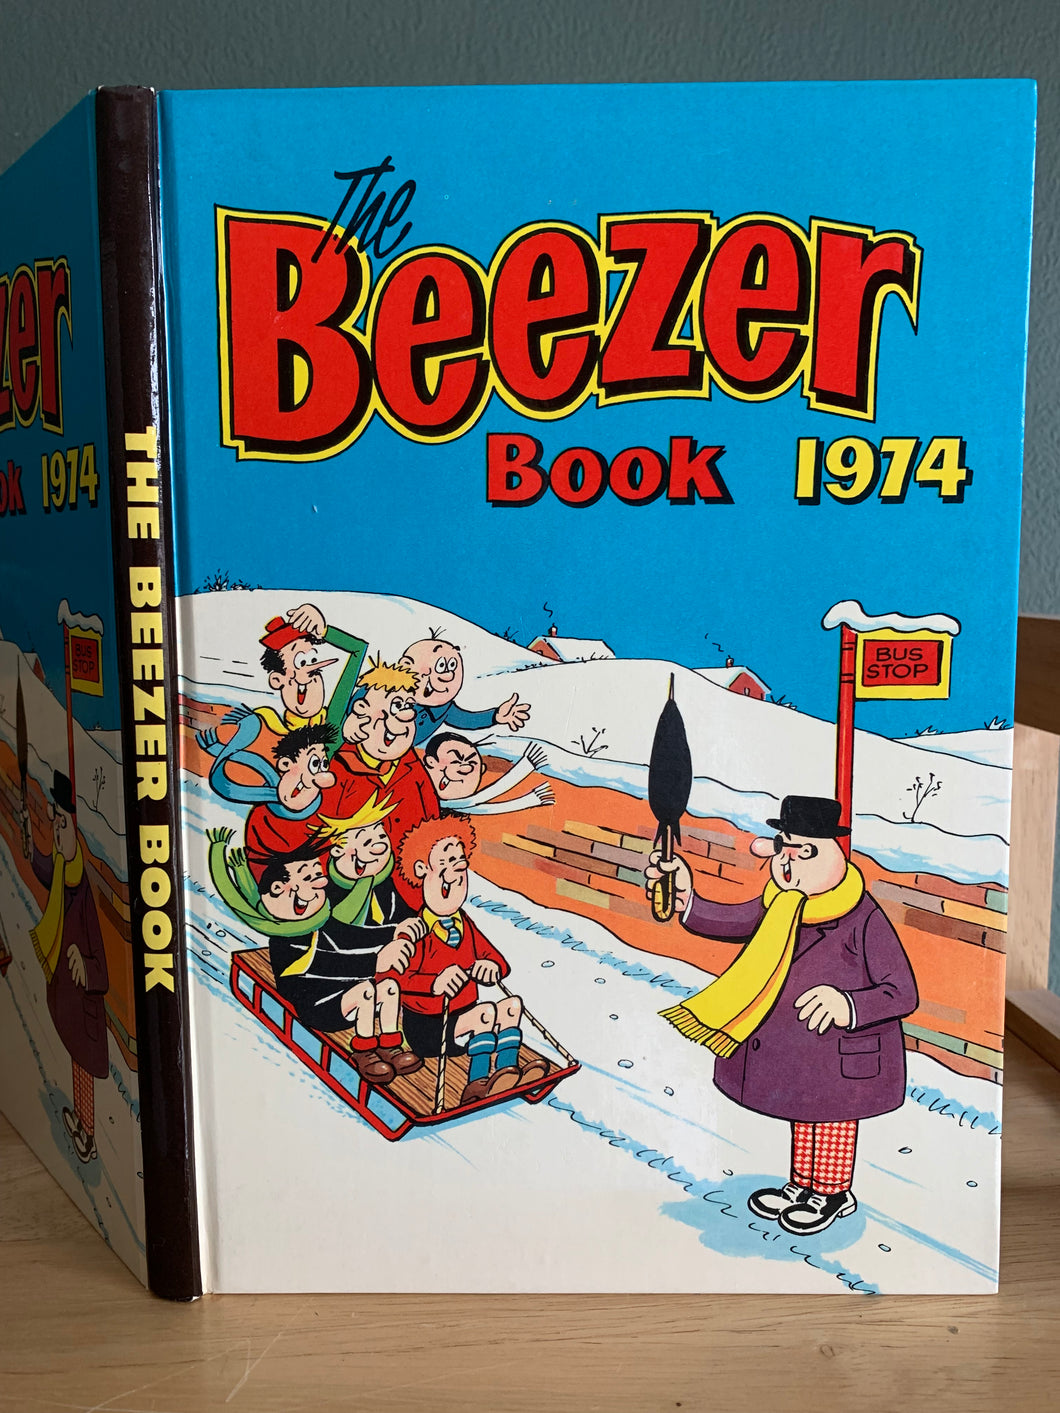 The Beezer Book 1974